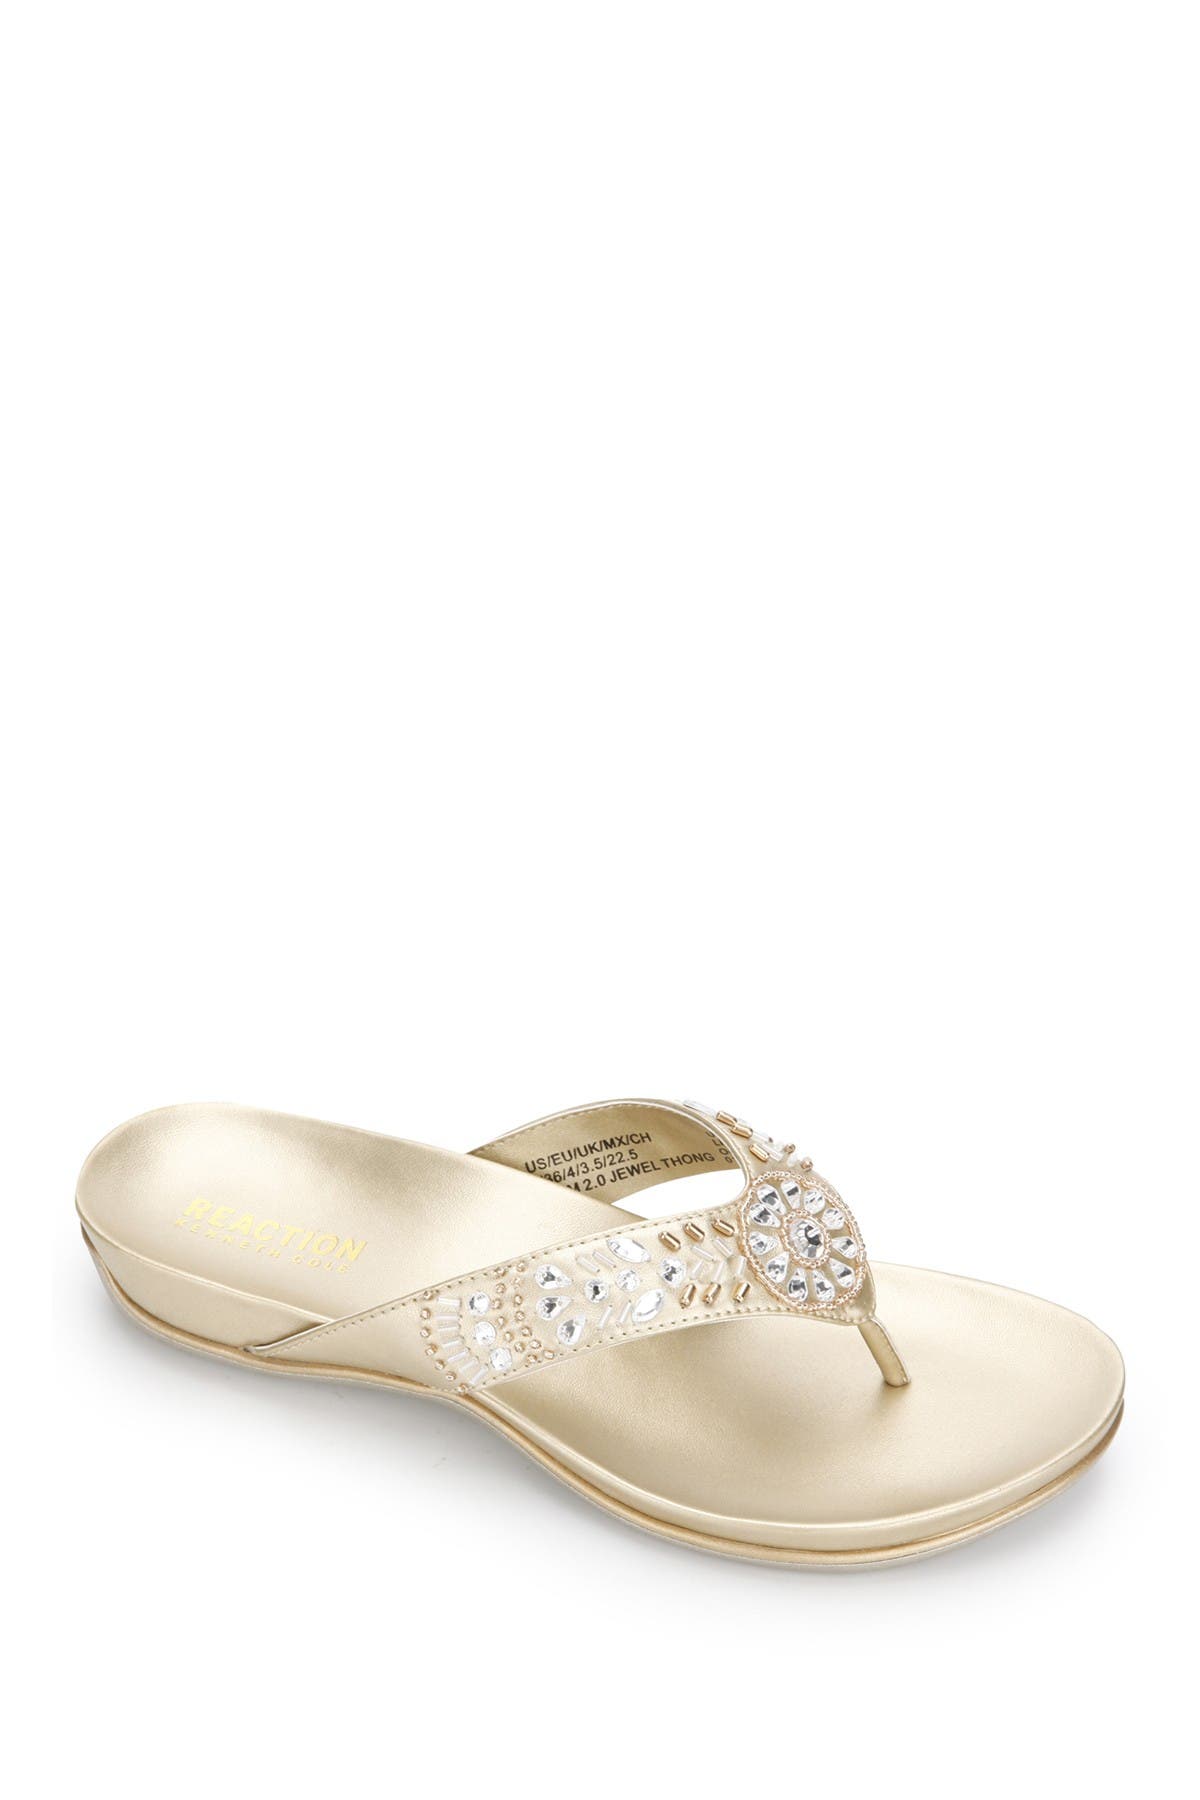 Kenneth Cole Reaction Glam 2.0 Embellished Flip-flop Sandal In Soft Gold